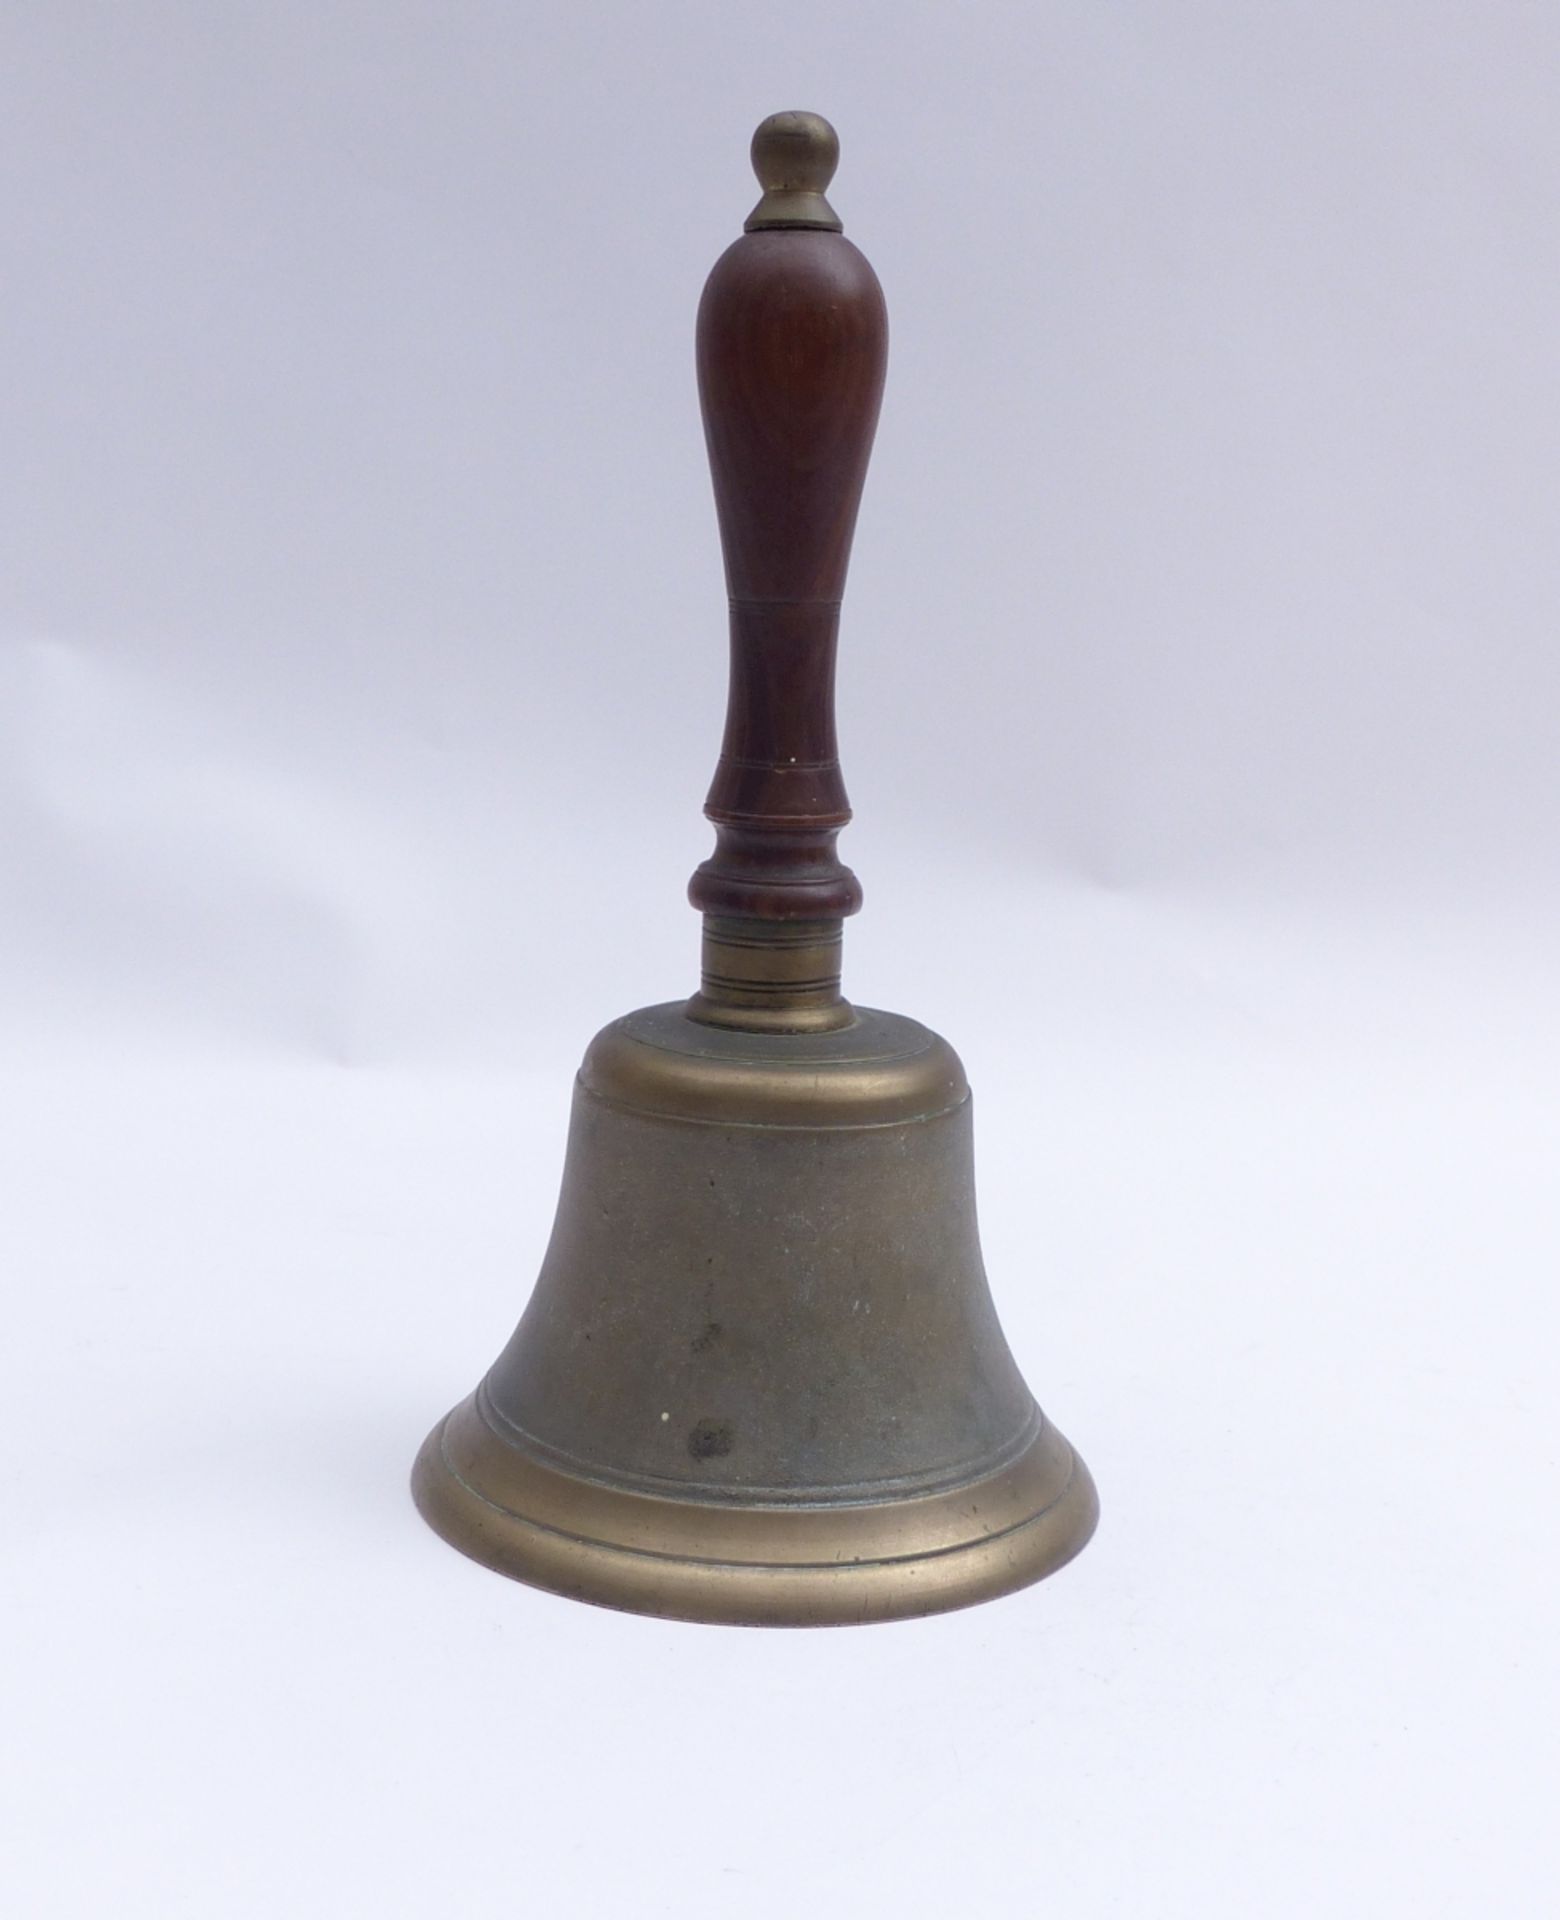 Glocke eines Marktschreiers, 19. Jh. - Image 2 of 3